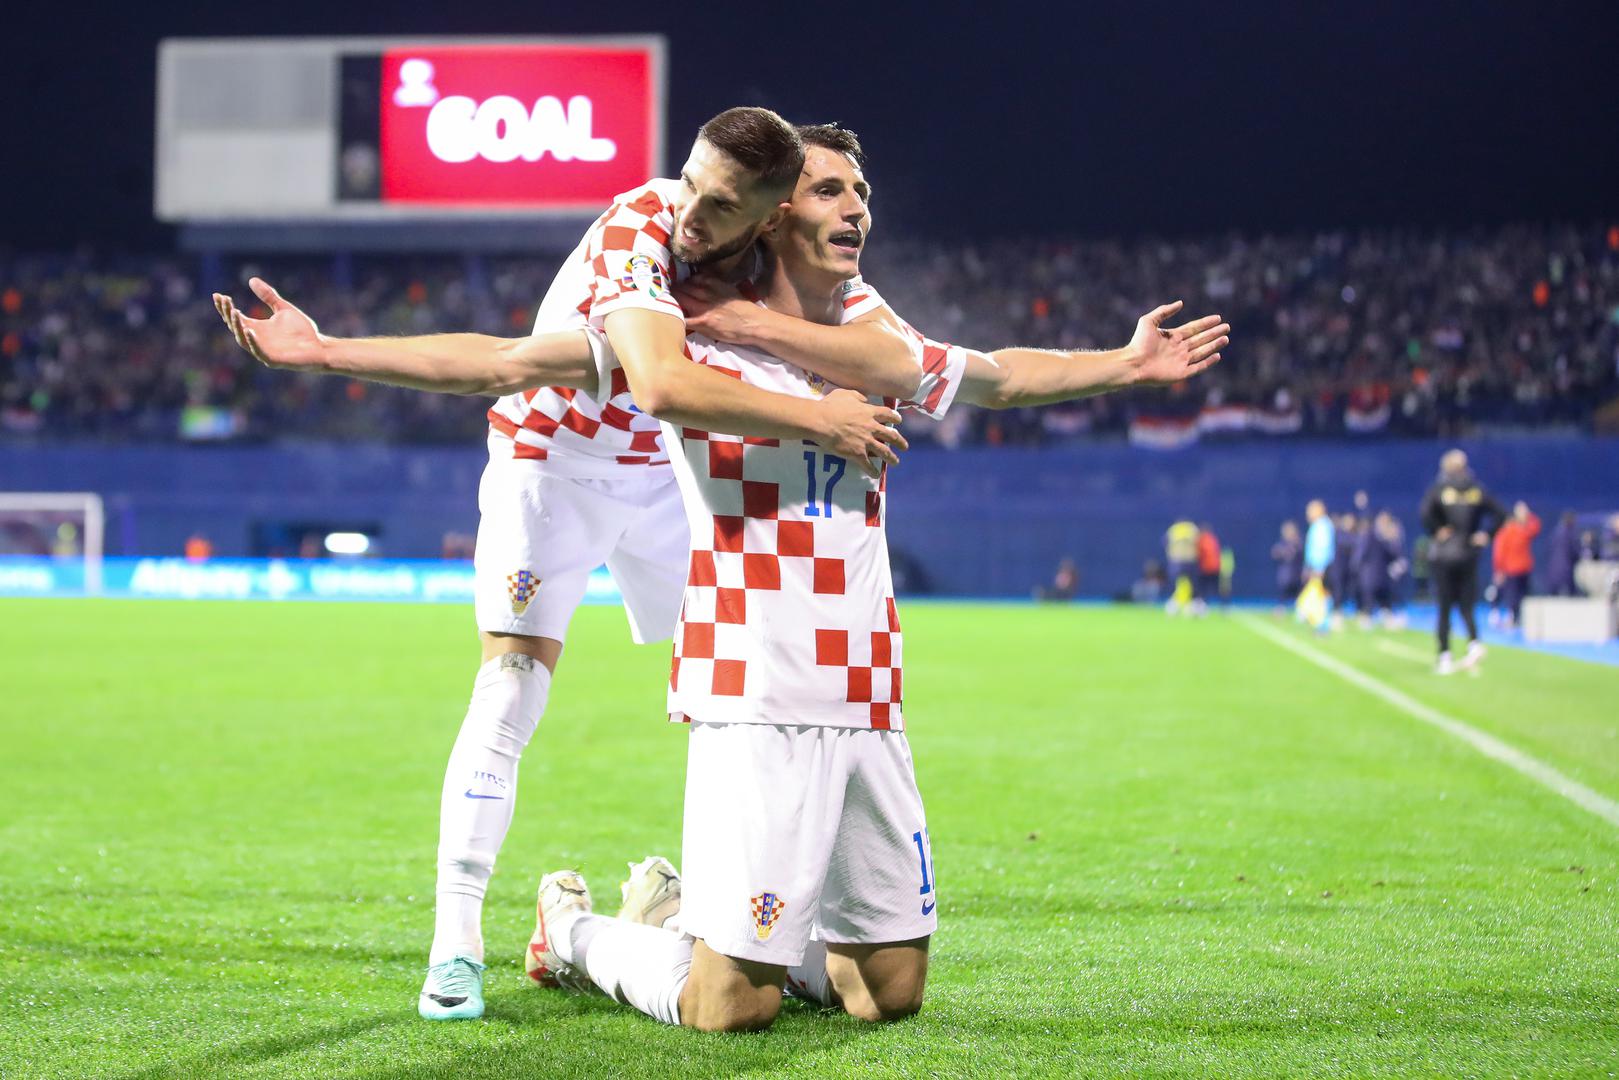 Bilo je i dosta lijepih i veselih trenutaka. Jedan od njih je gol koji je Hrvatsku odveo na Europsko nogometno prvenstvo. Također, zabilježili smo i veliki uspjeh mladih Hajdukovaca koji su došli do finala juniorske Lige prvaka.